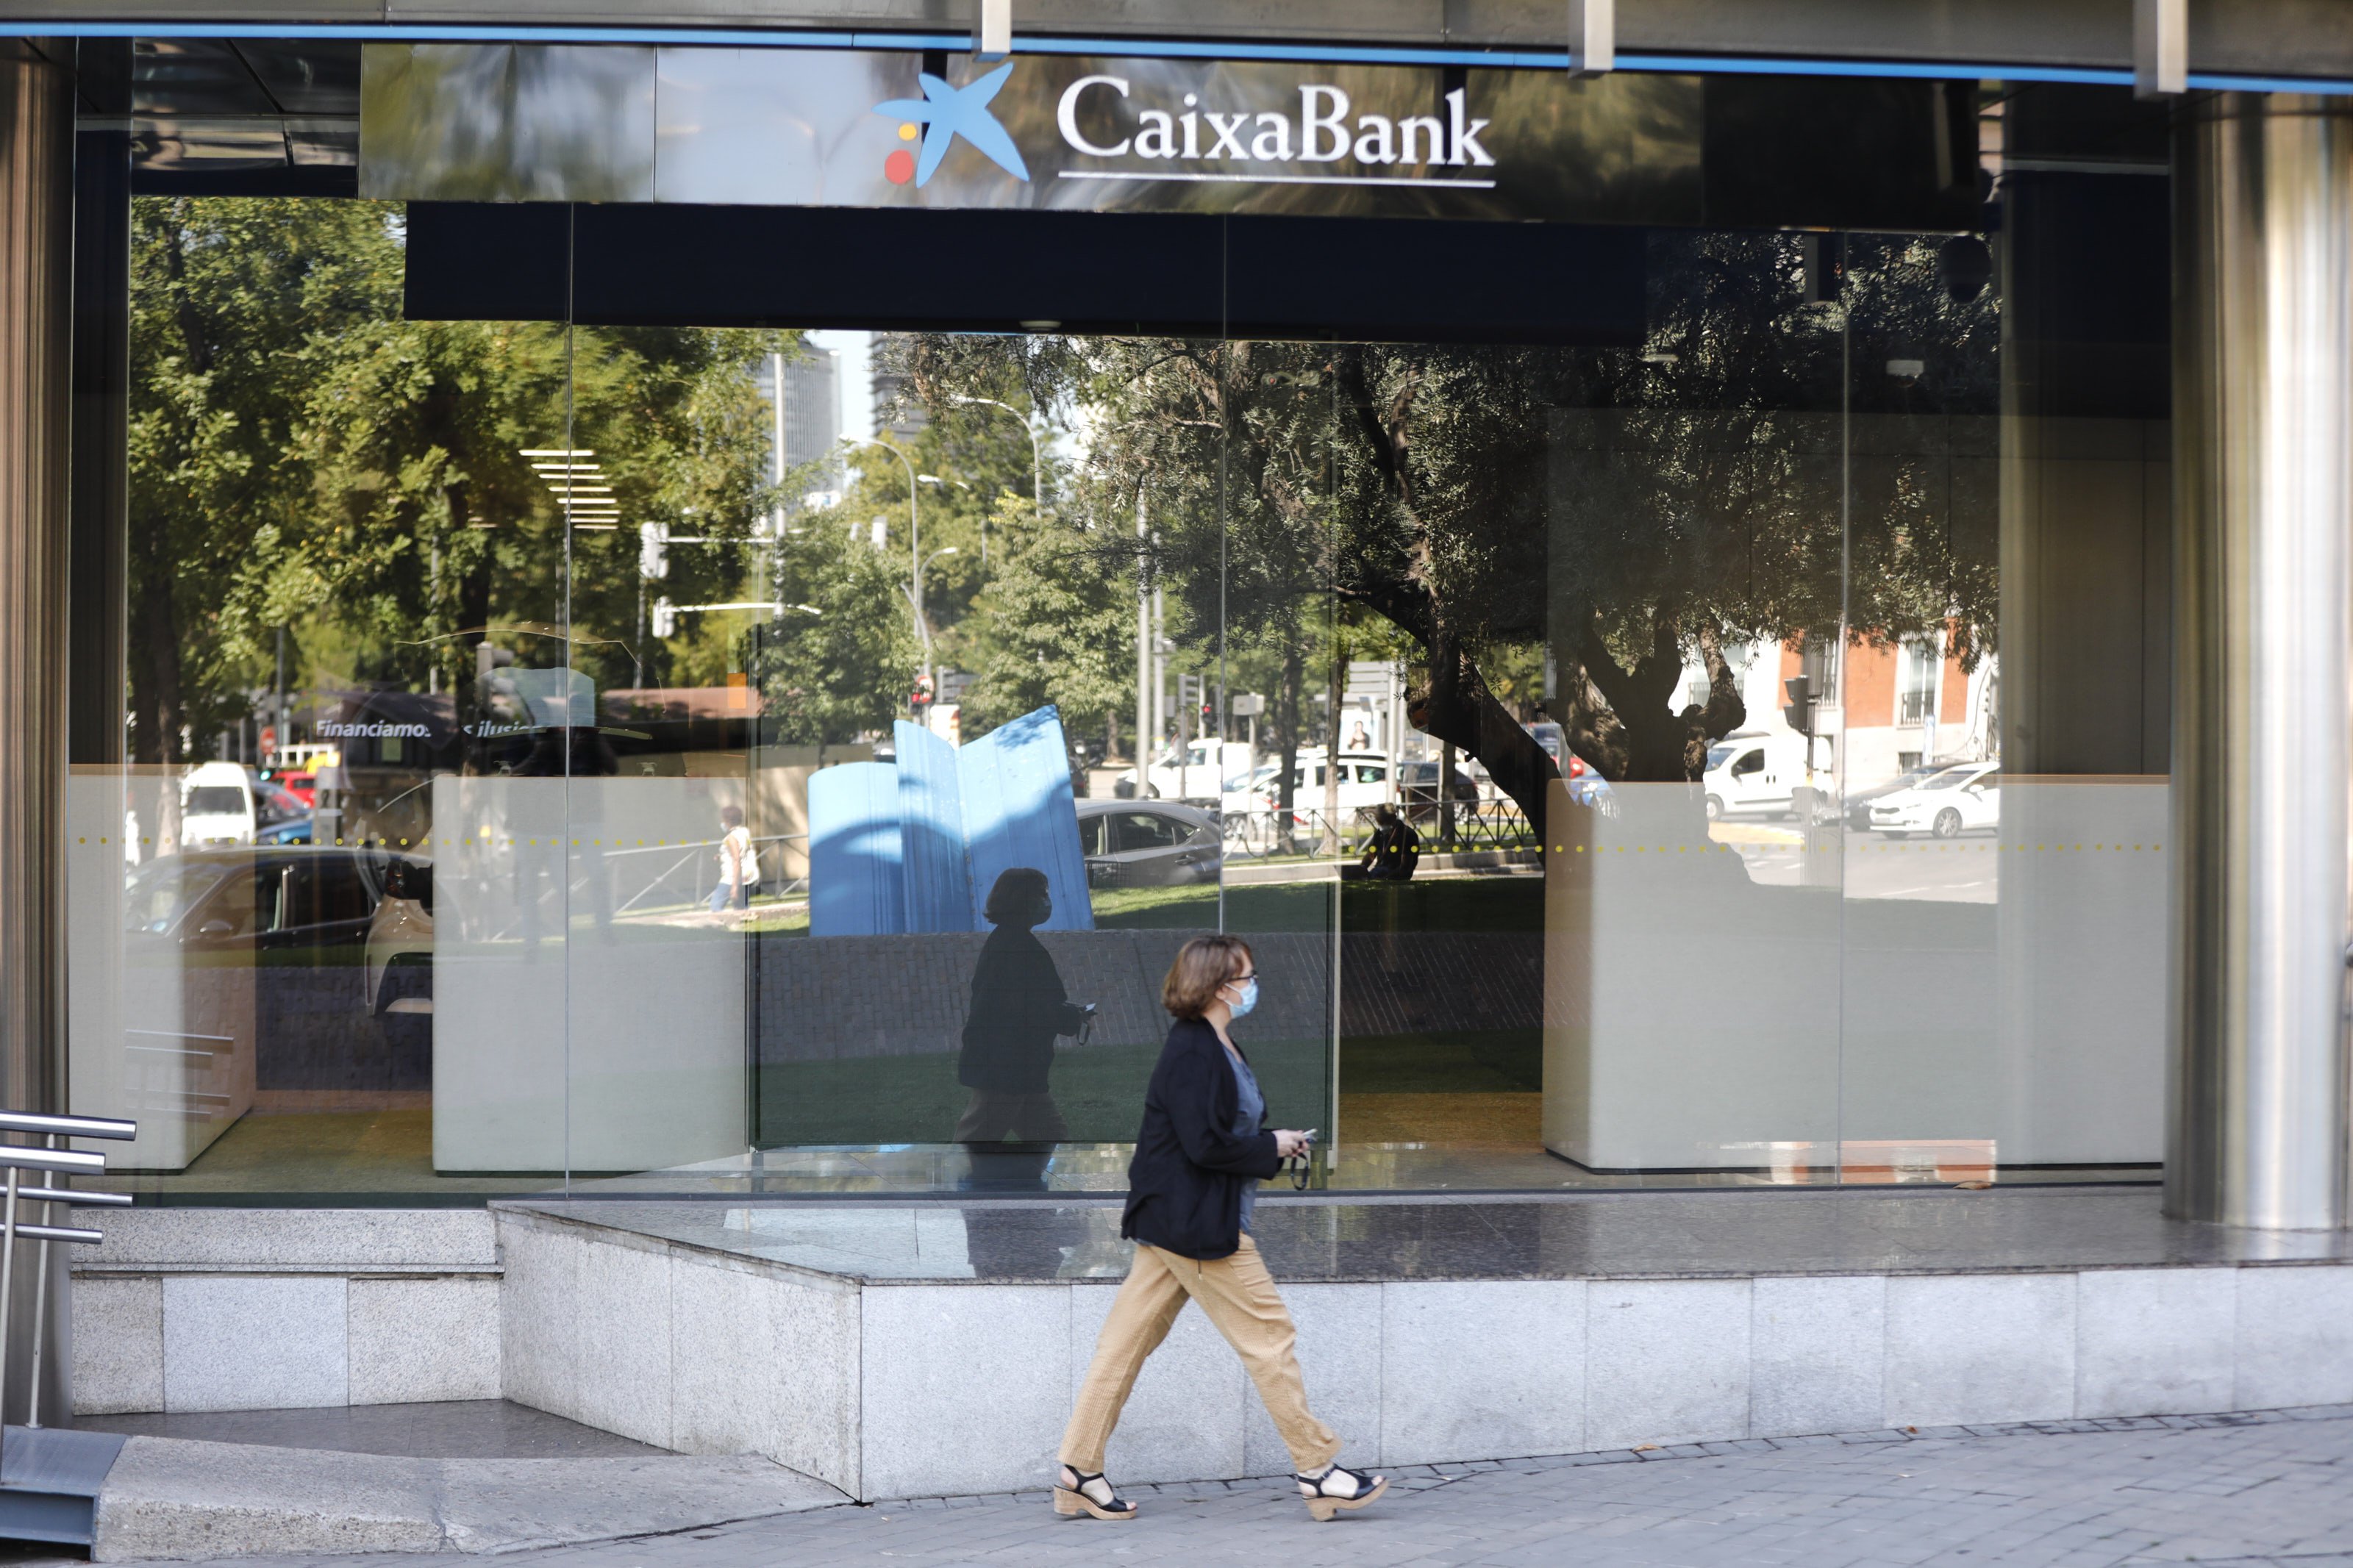 ¿Cómo afectará la fusión a los clientes de CaixaBank y Bankia?